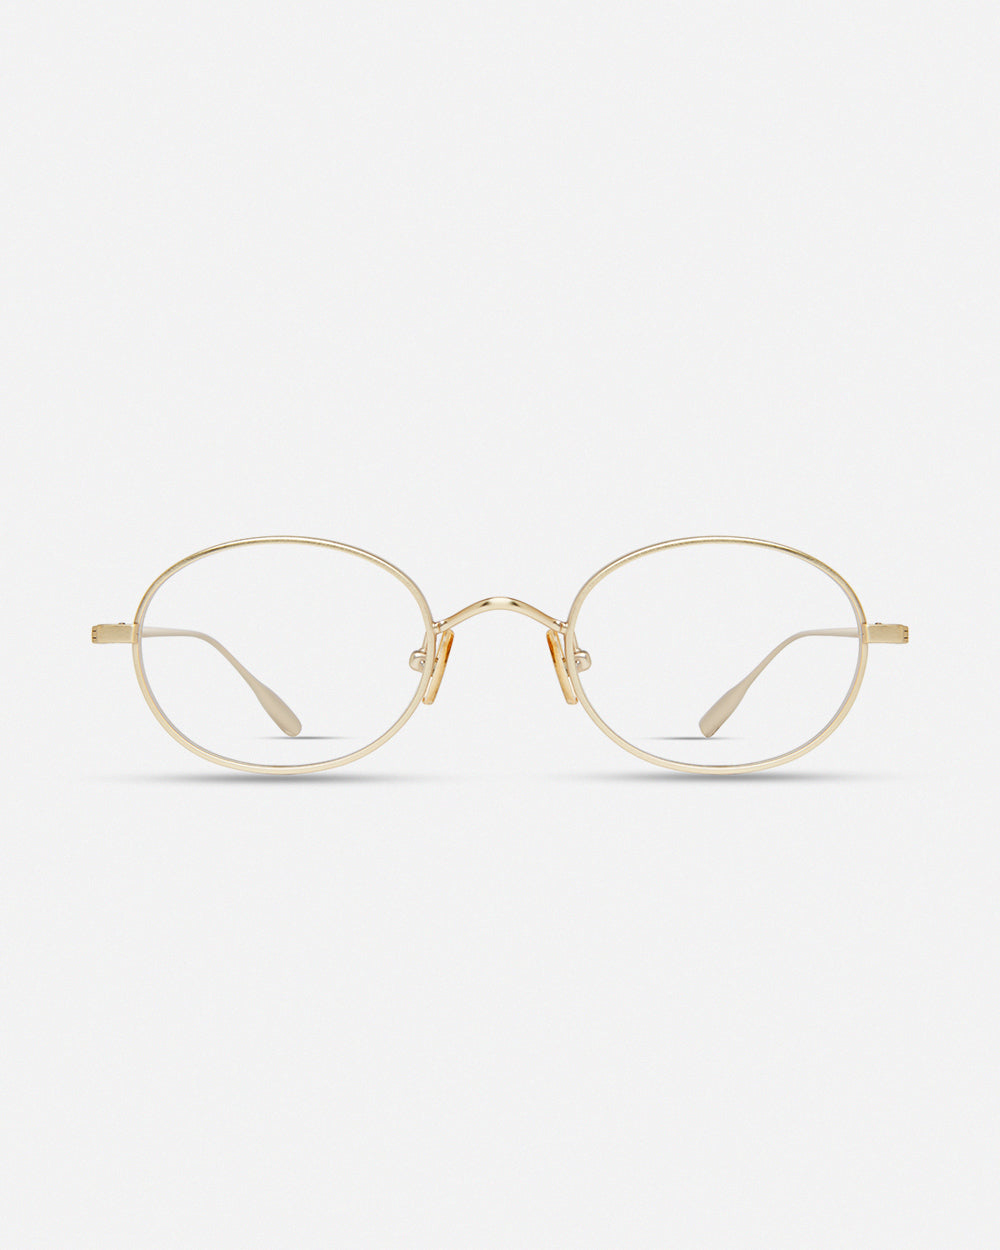 New eyeglasses – MODO Eyewear